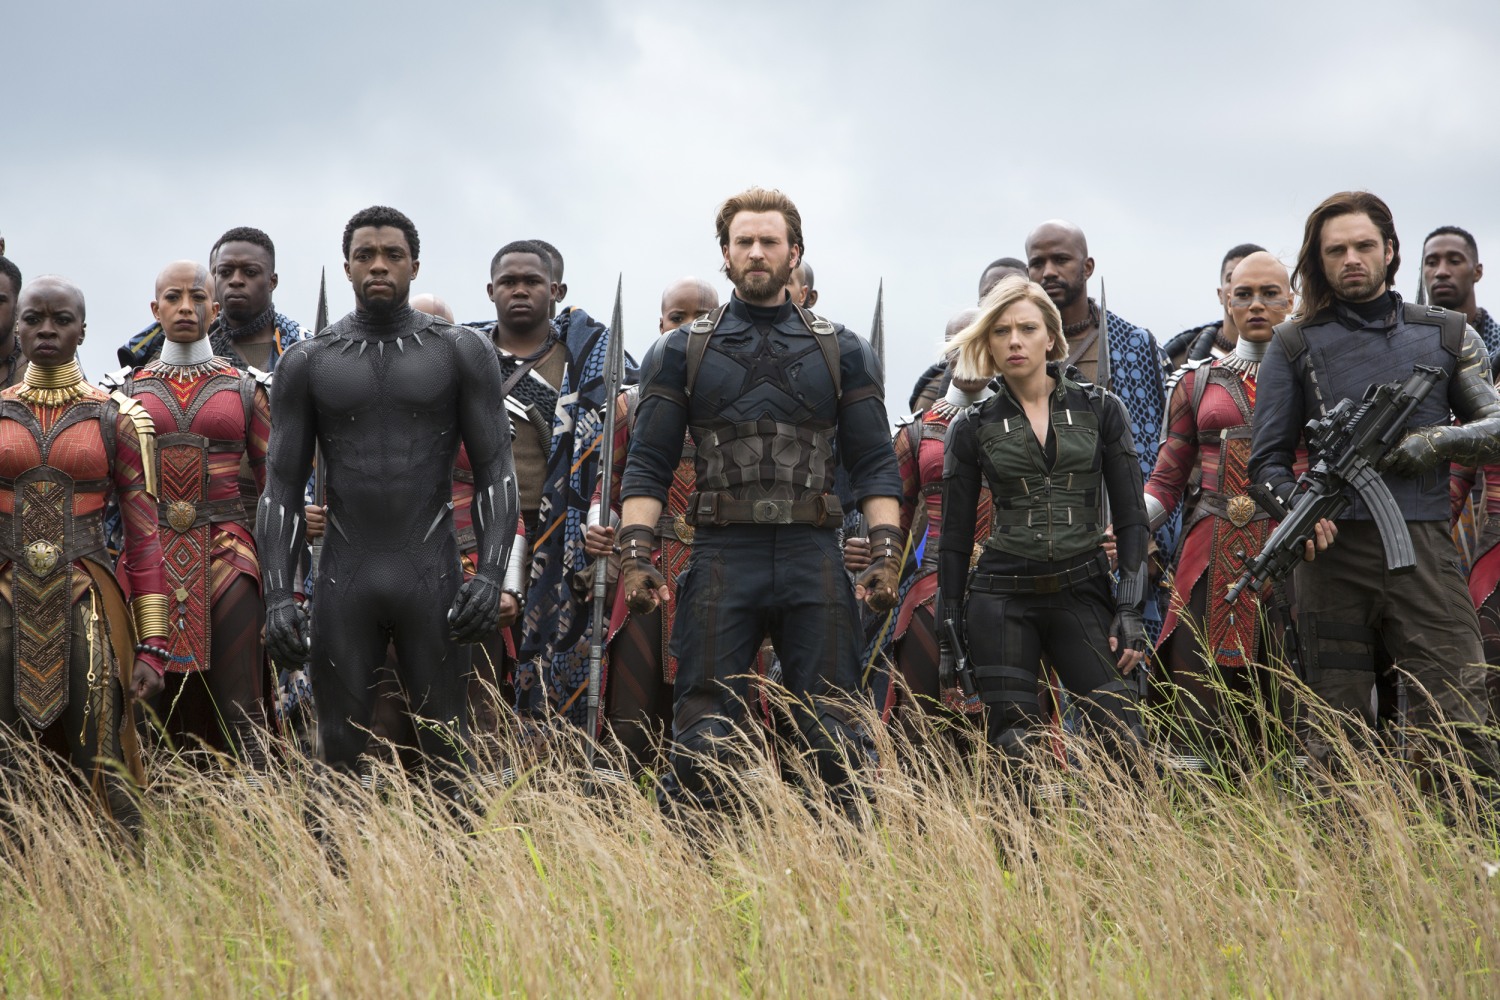 Raising Real Men » » Avengers: Endgame – All the Feels